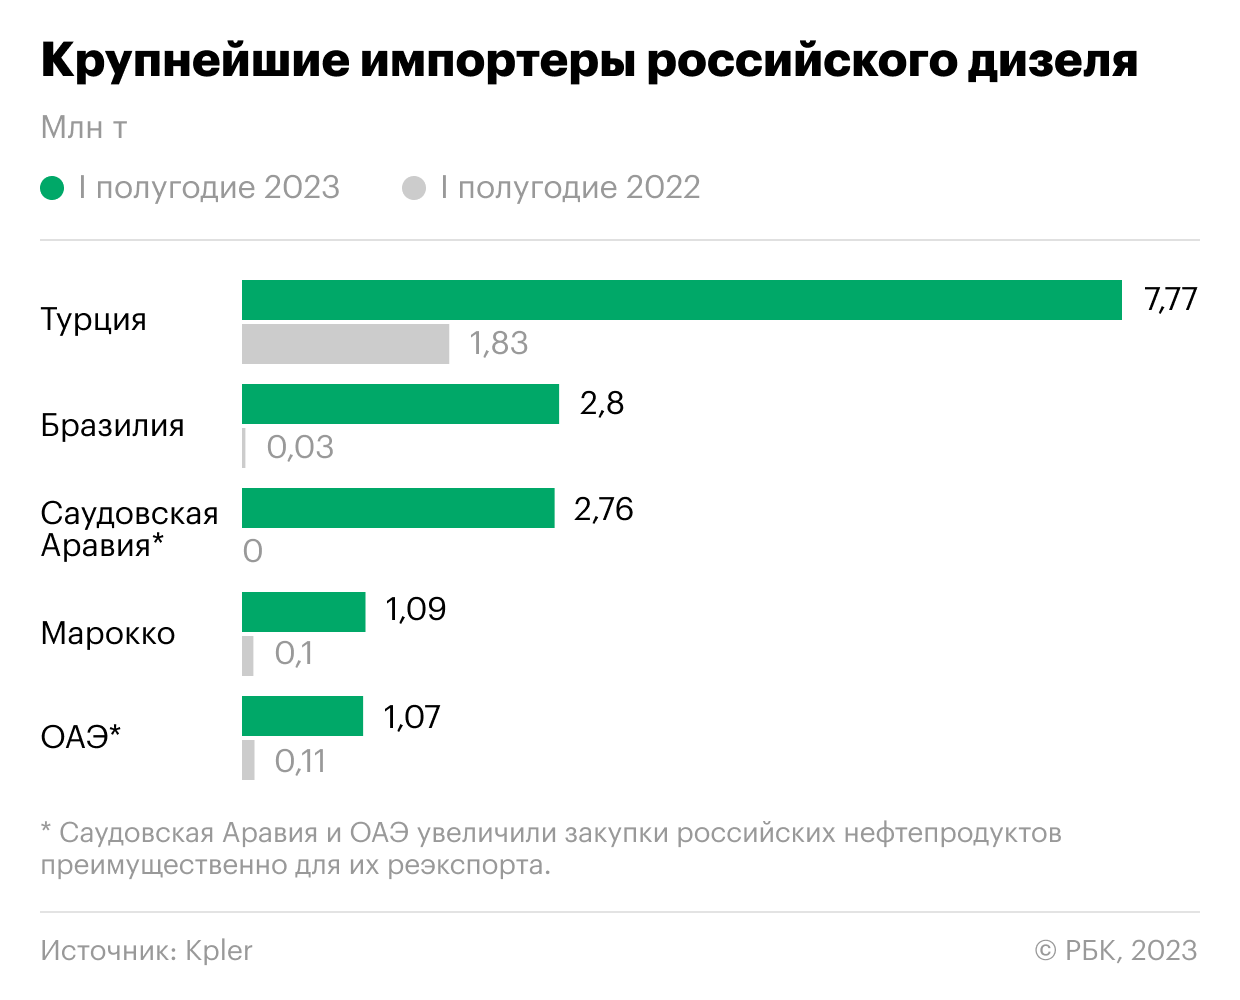 Какие страны затронет запрет на экспорт российского топлива